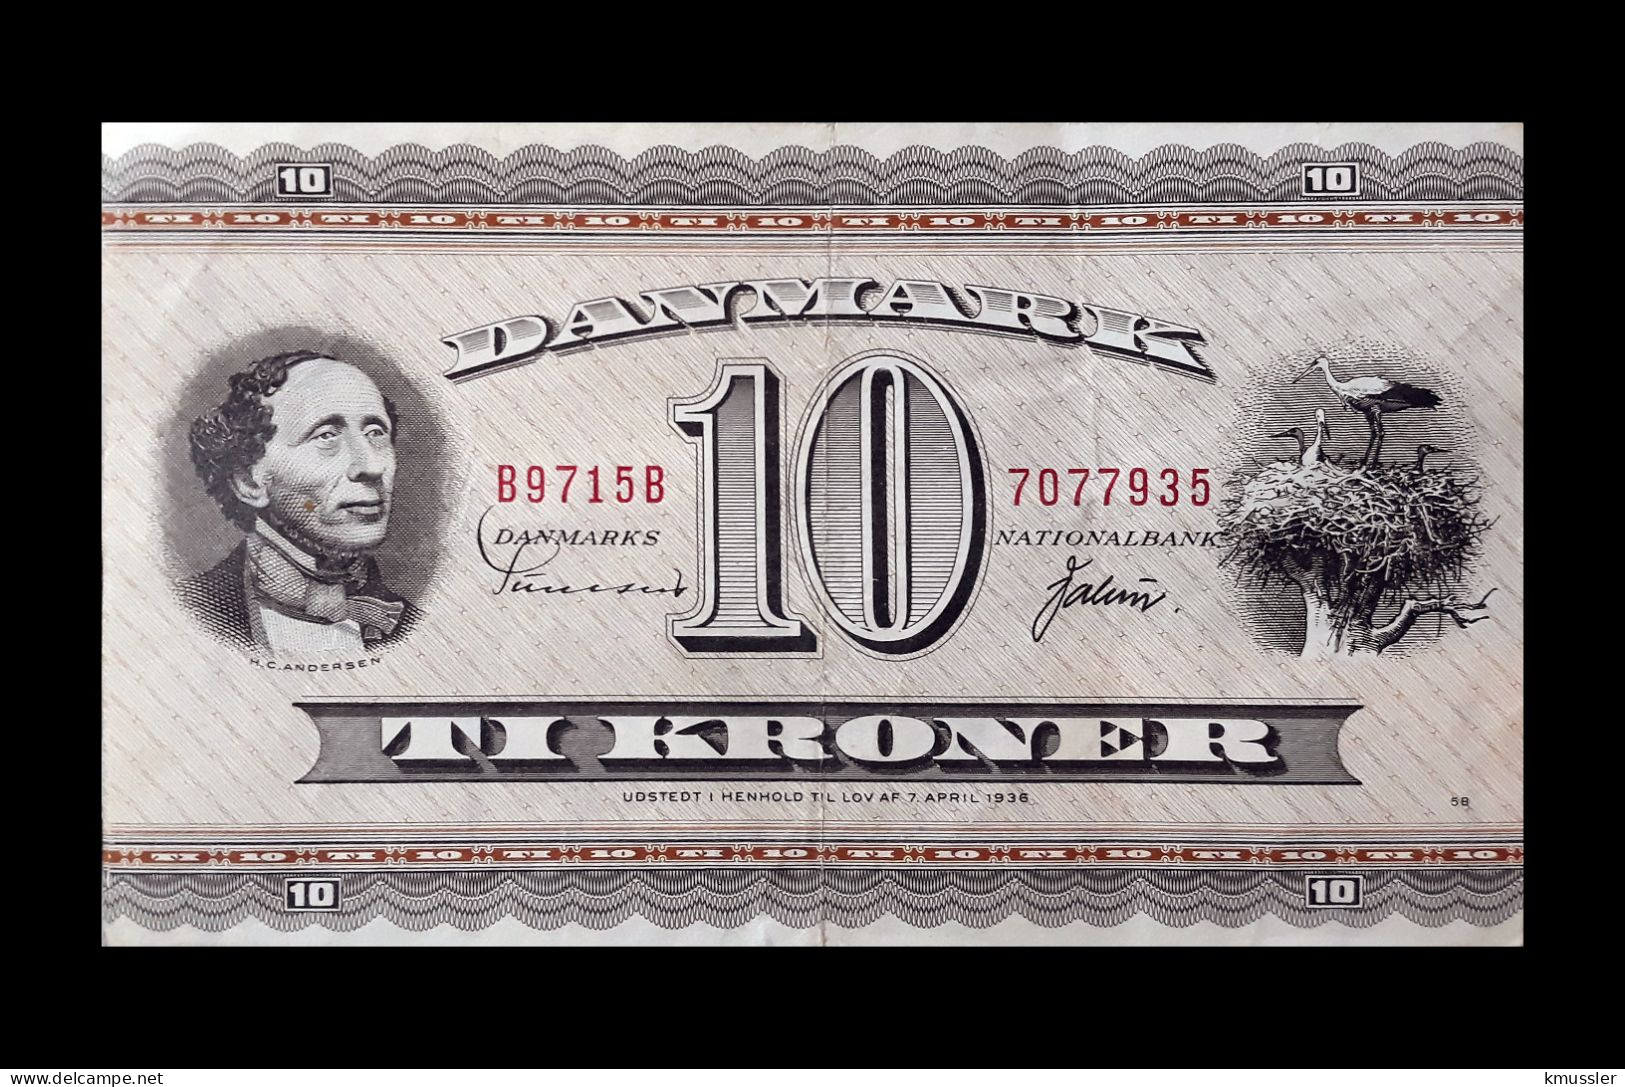 # # # Banknote Dänemark (Denmark) 10 Kroner 1936 # # # - Dänemark